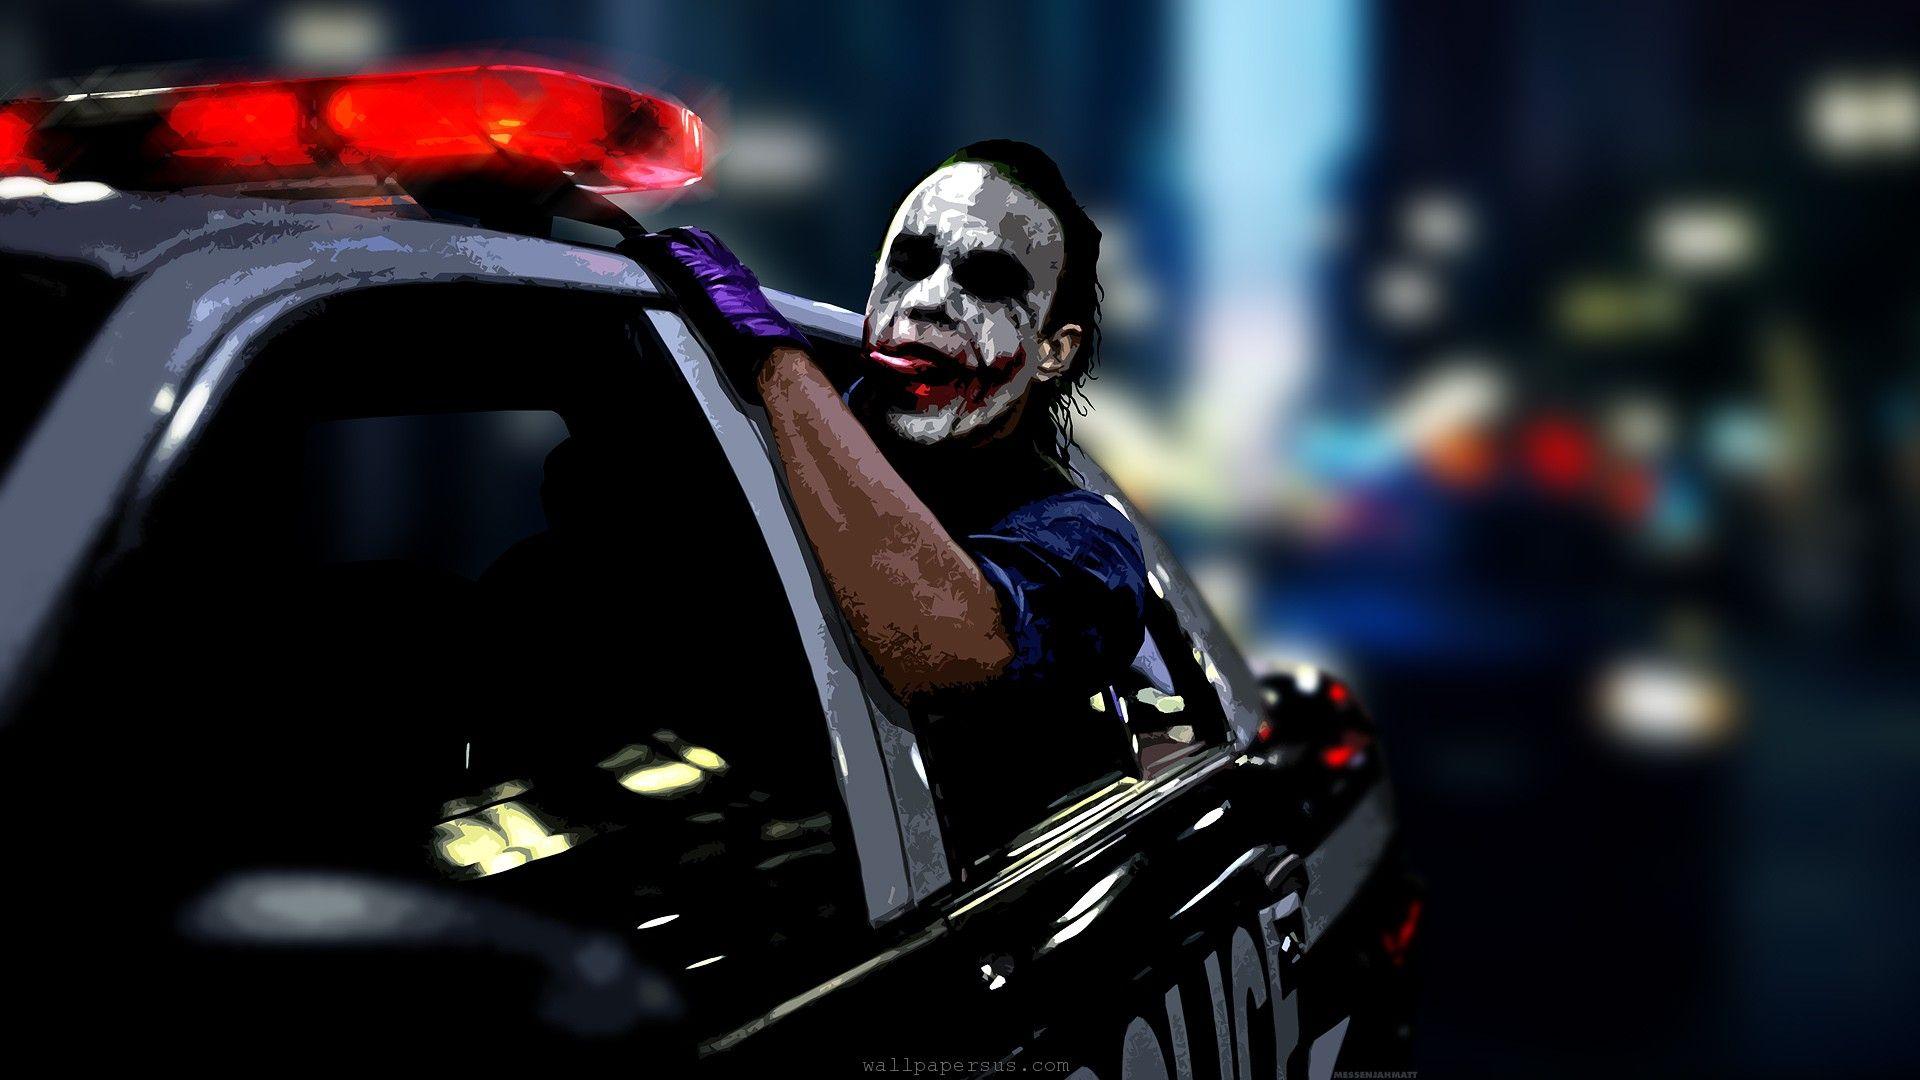 Dark Knight Joker Police Smile Art 1920x1080 Wallpaper Wpt7609747